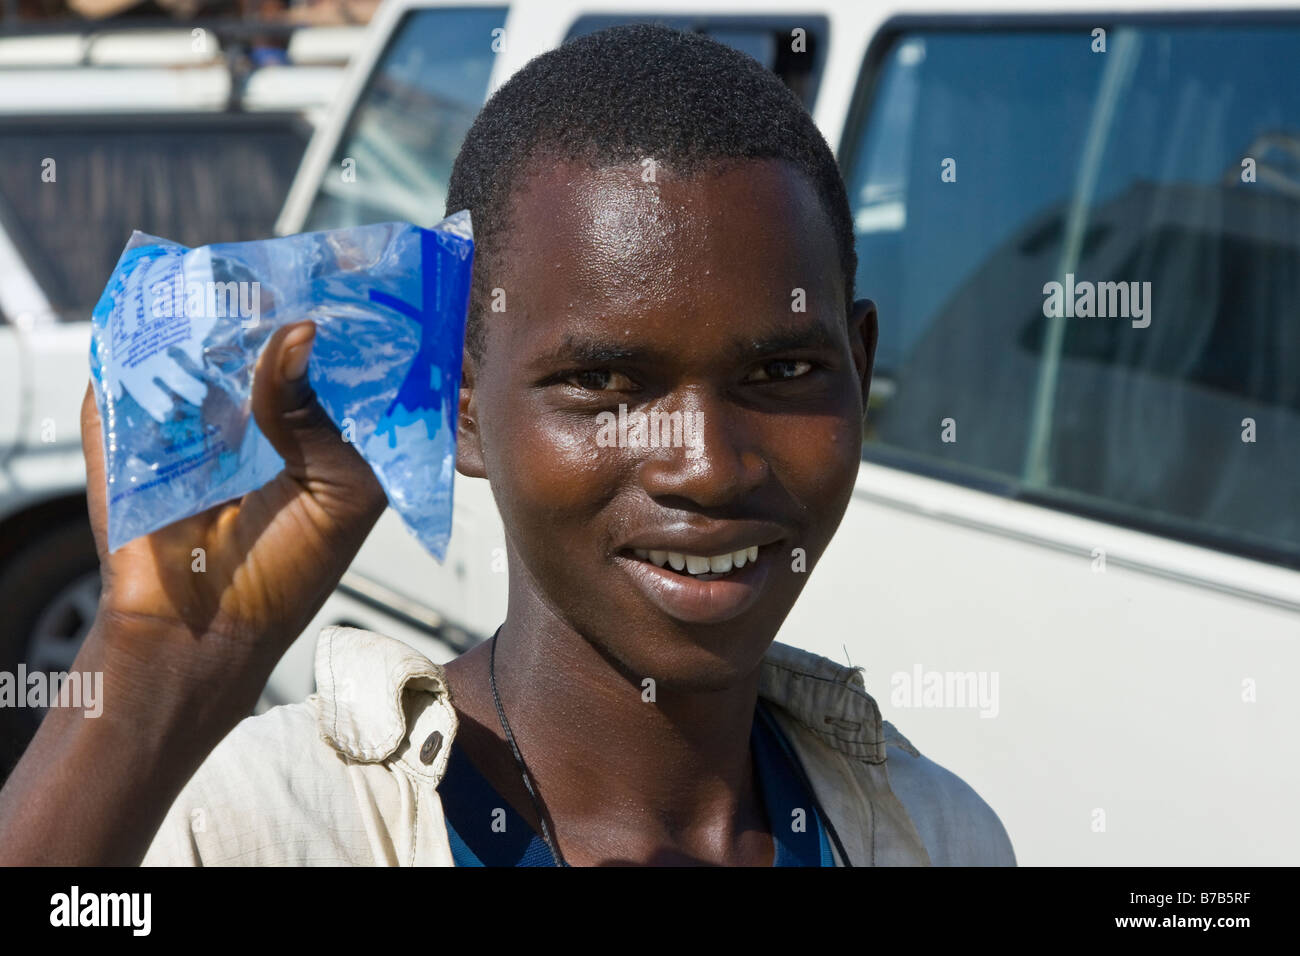 Jeune homme vendant de l'eau potable à la station de bus ou à la Gare Routière Pompiers à Dakar au Sénégal Banque D'Images